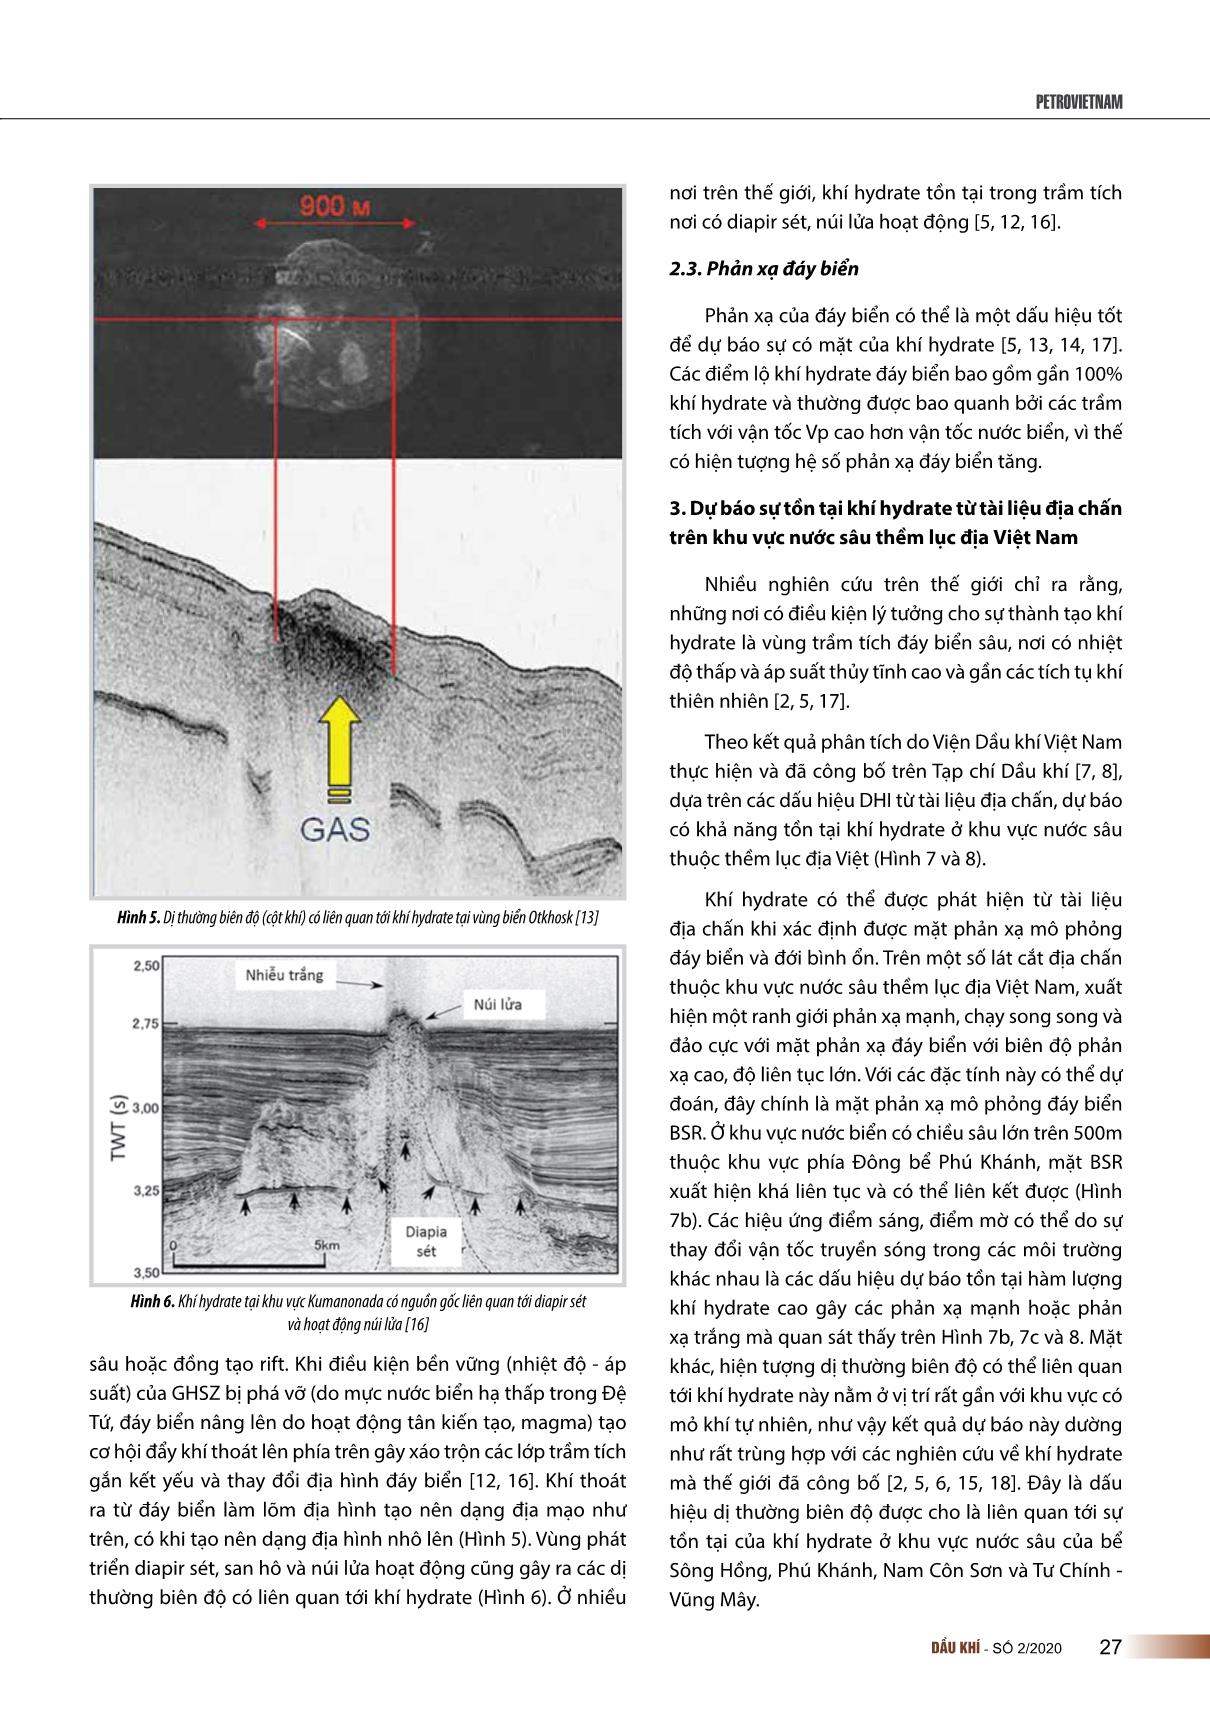 Các dấu hiệu trực tiếp dự báo sự tồn tại của khí hydrate từ tài liệu địa chấn trên khu vực nước sâu thềm lục địa Việt Nam trang 4